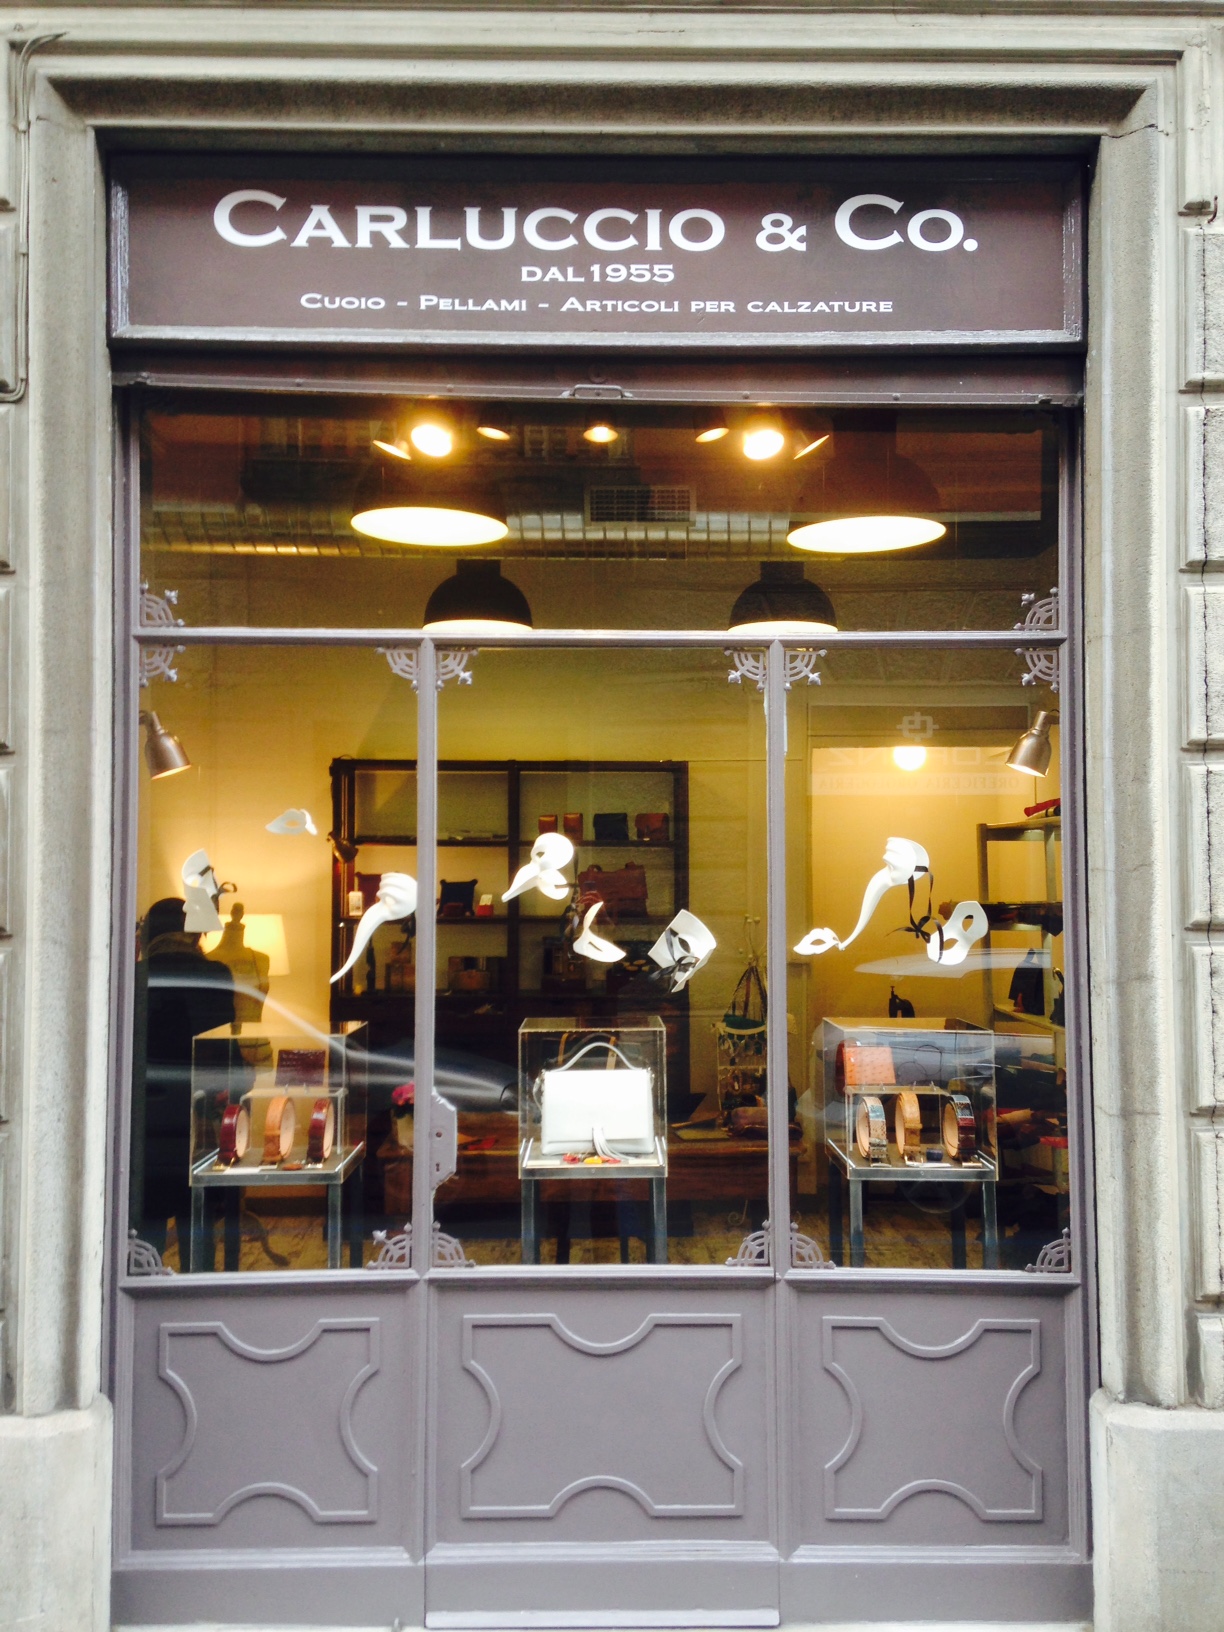 Carluccio & Co. s.n.c.